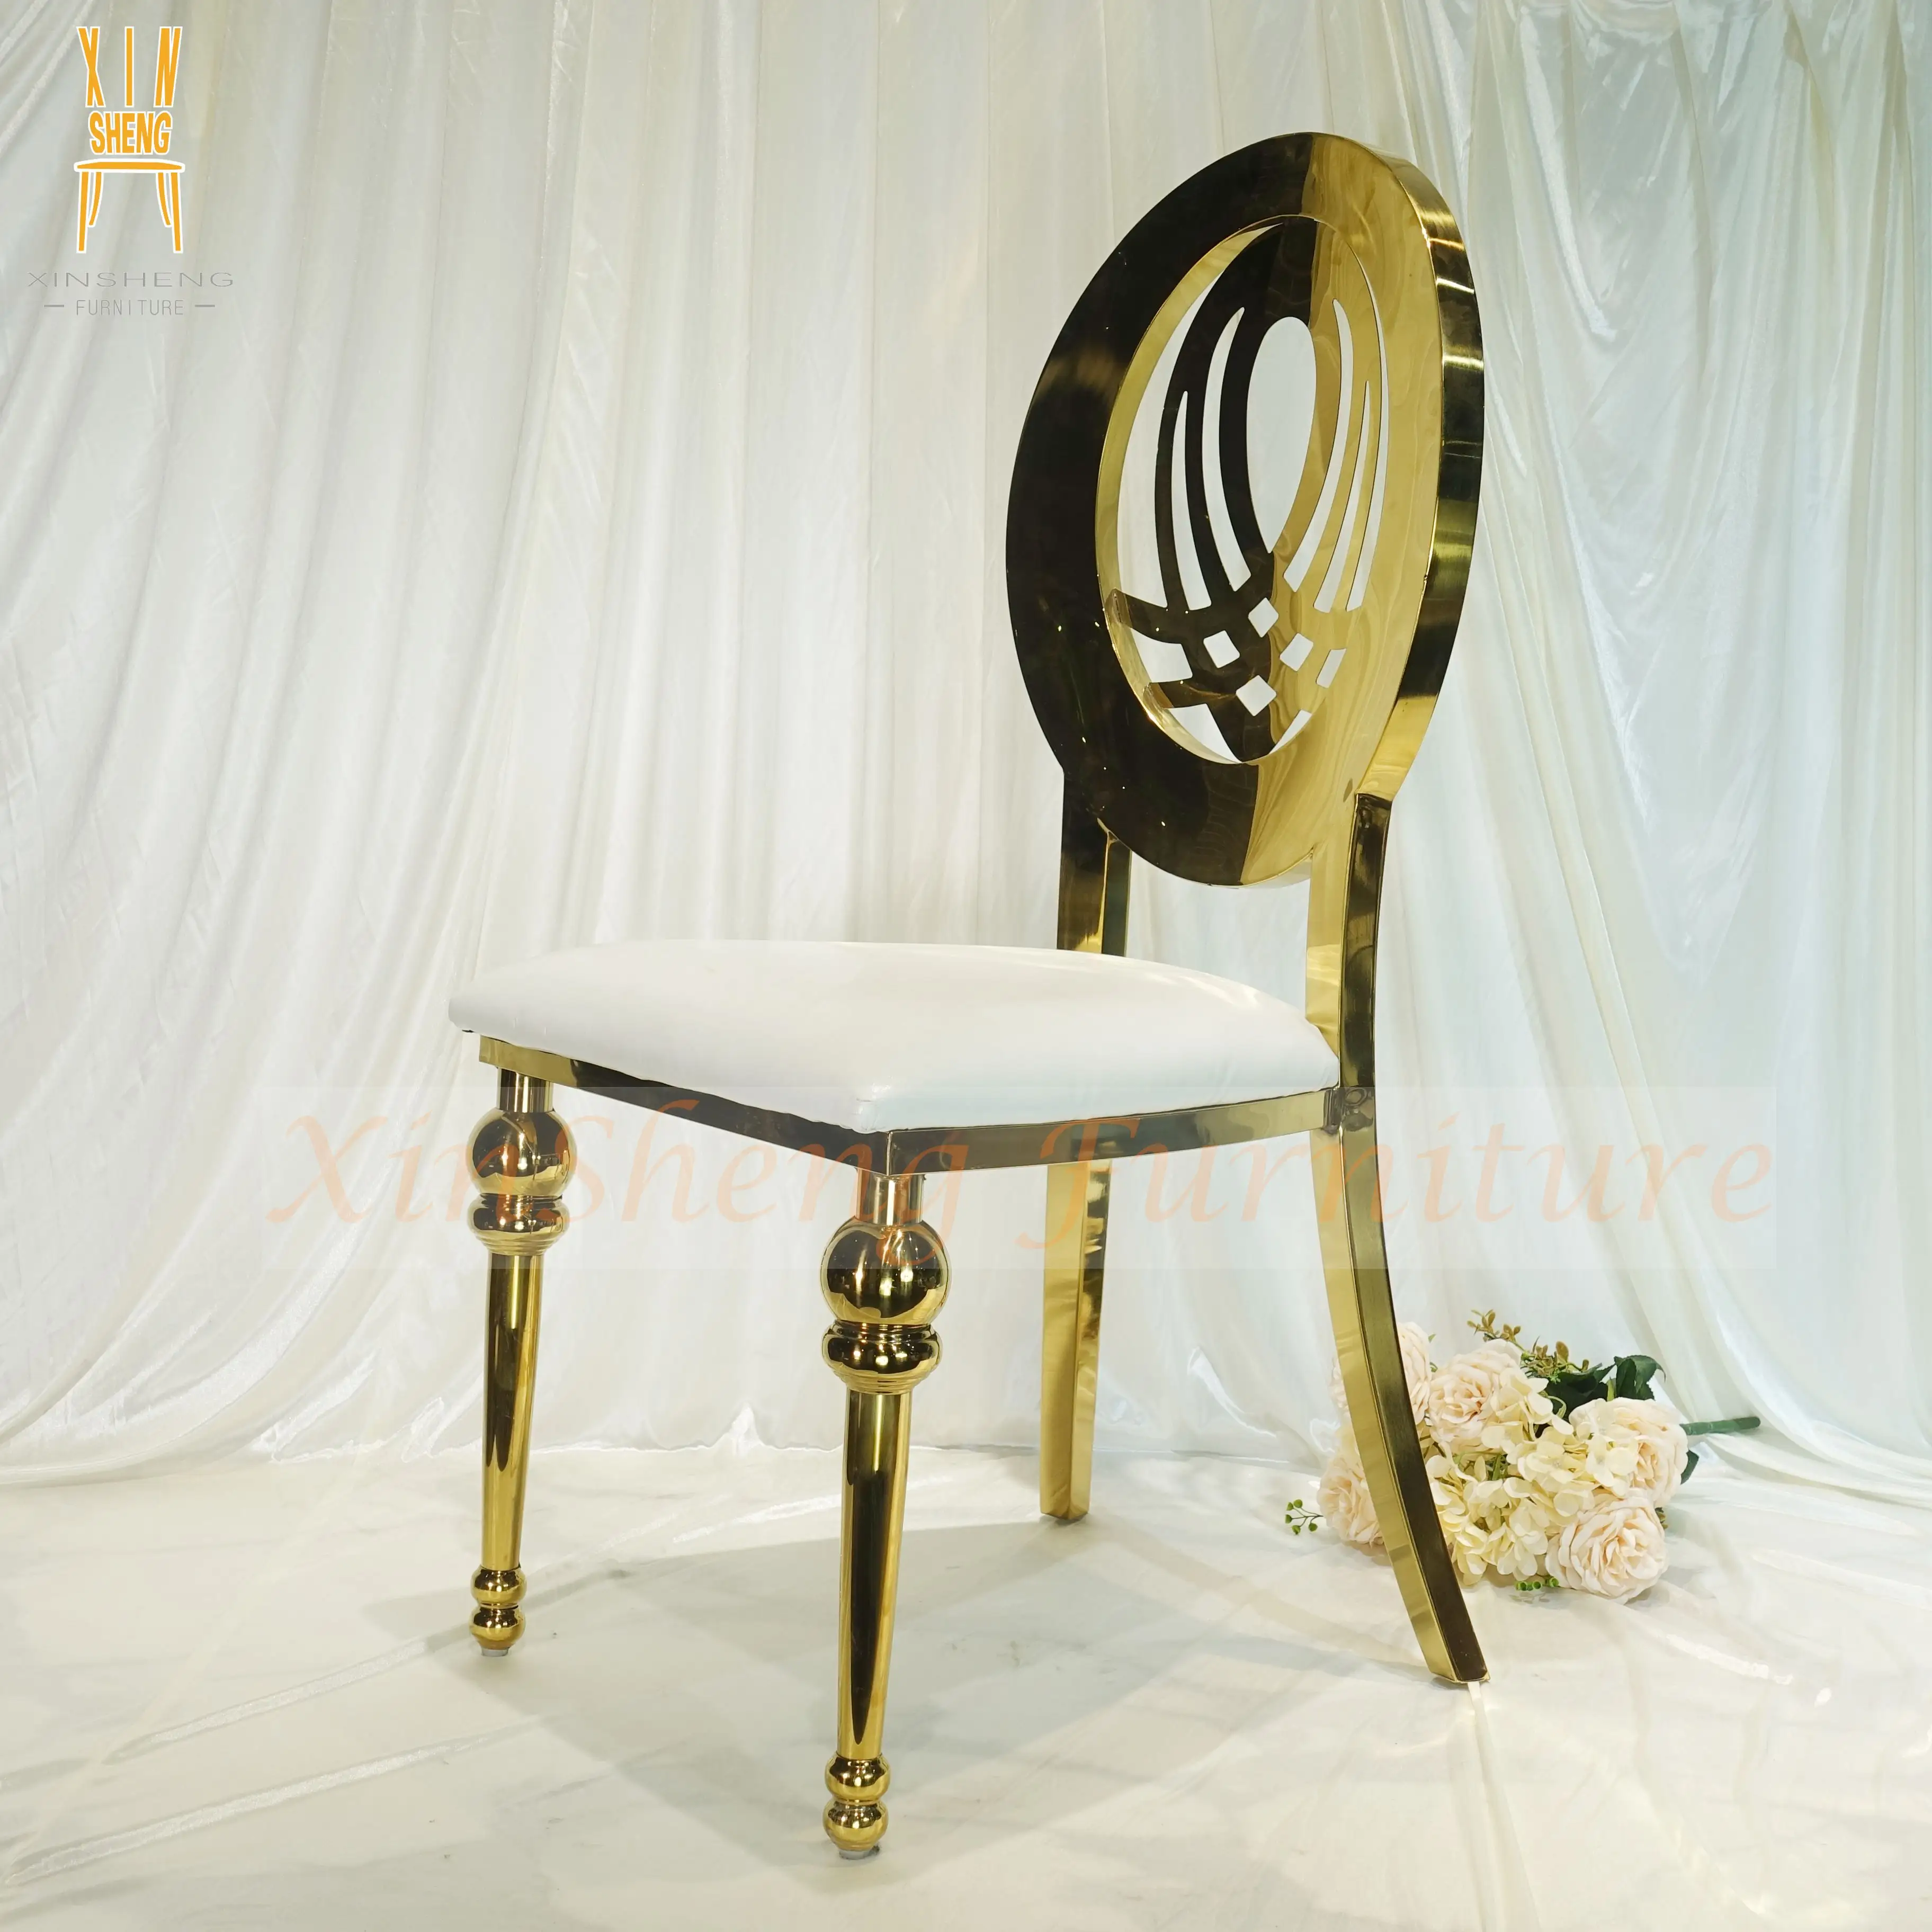 Moderna Calda di vendita di Cerimonia Nuziale in Oro In Acciaio Inox Evento sedia Da Pranzo